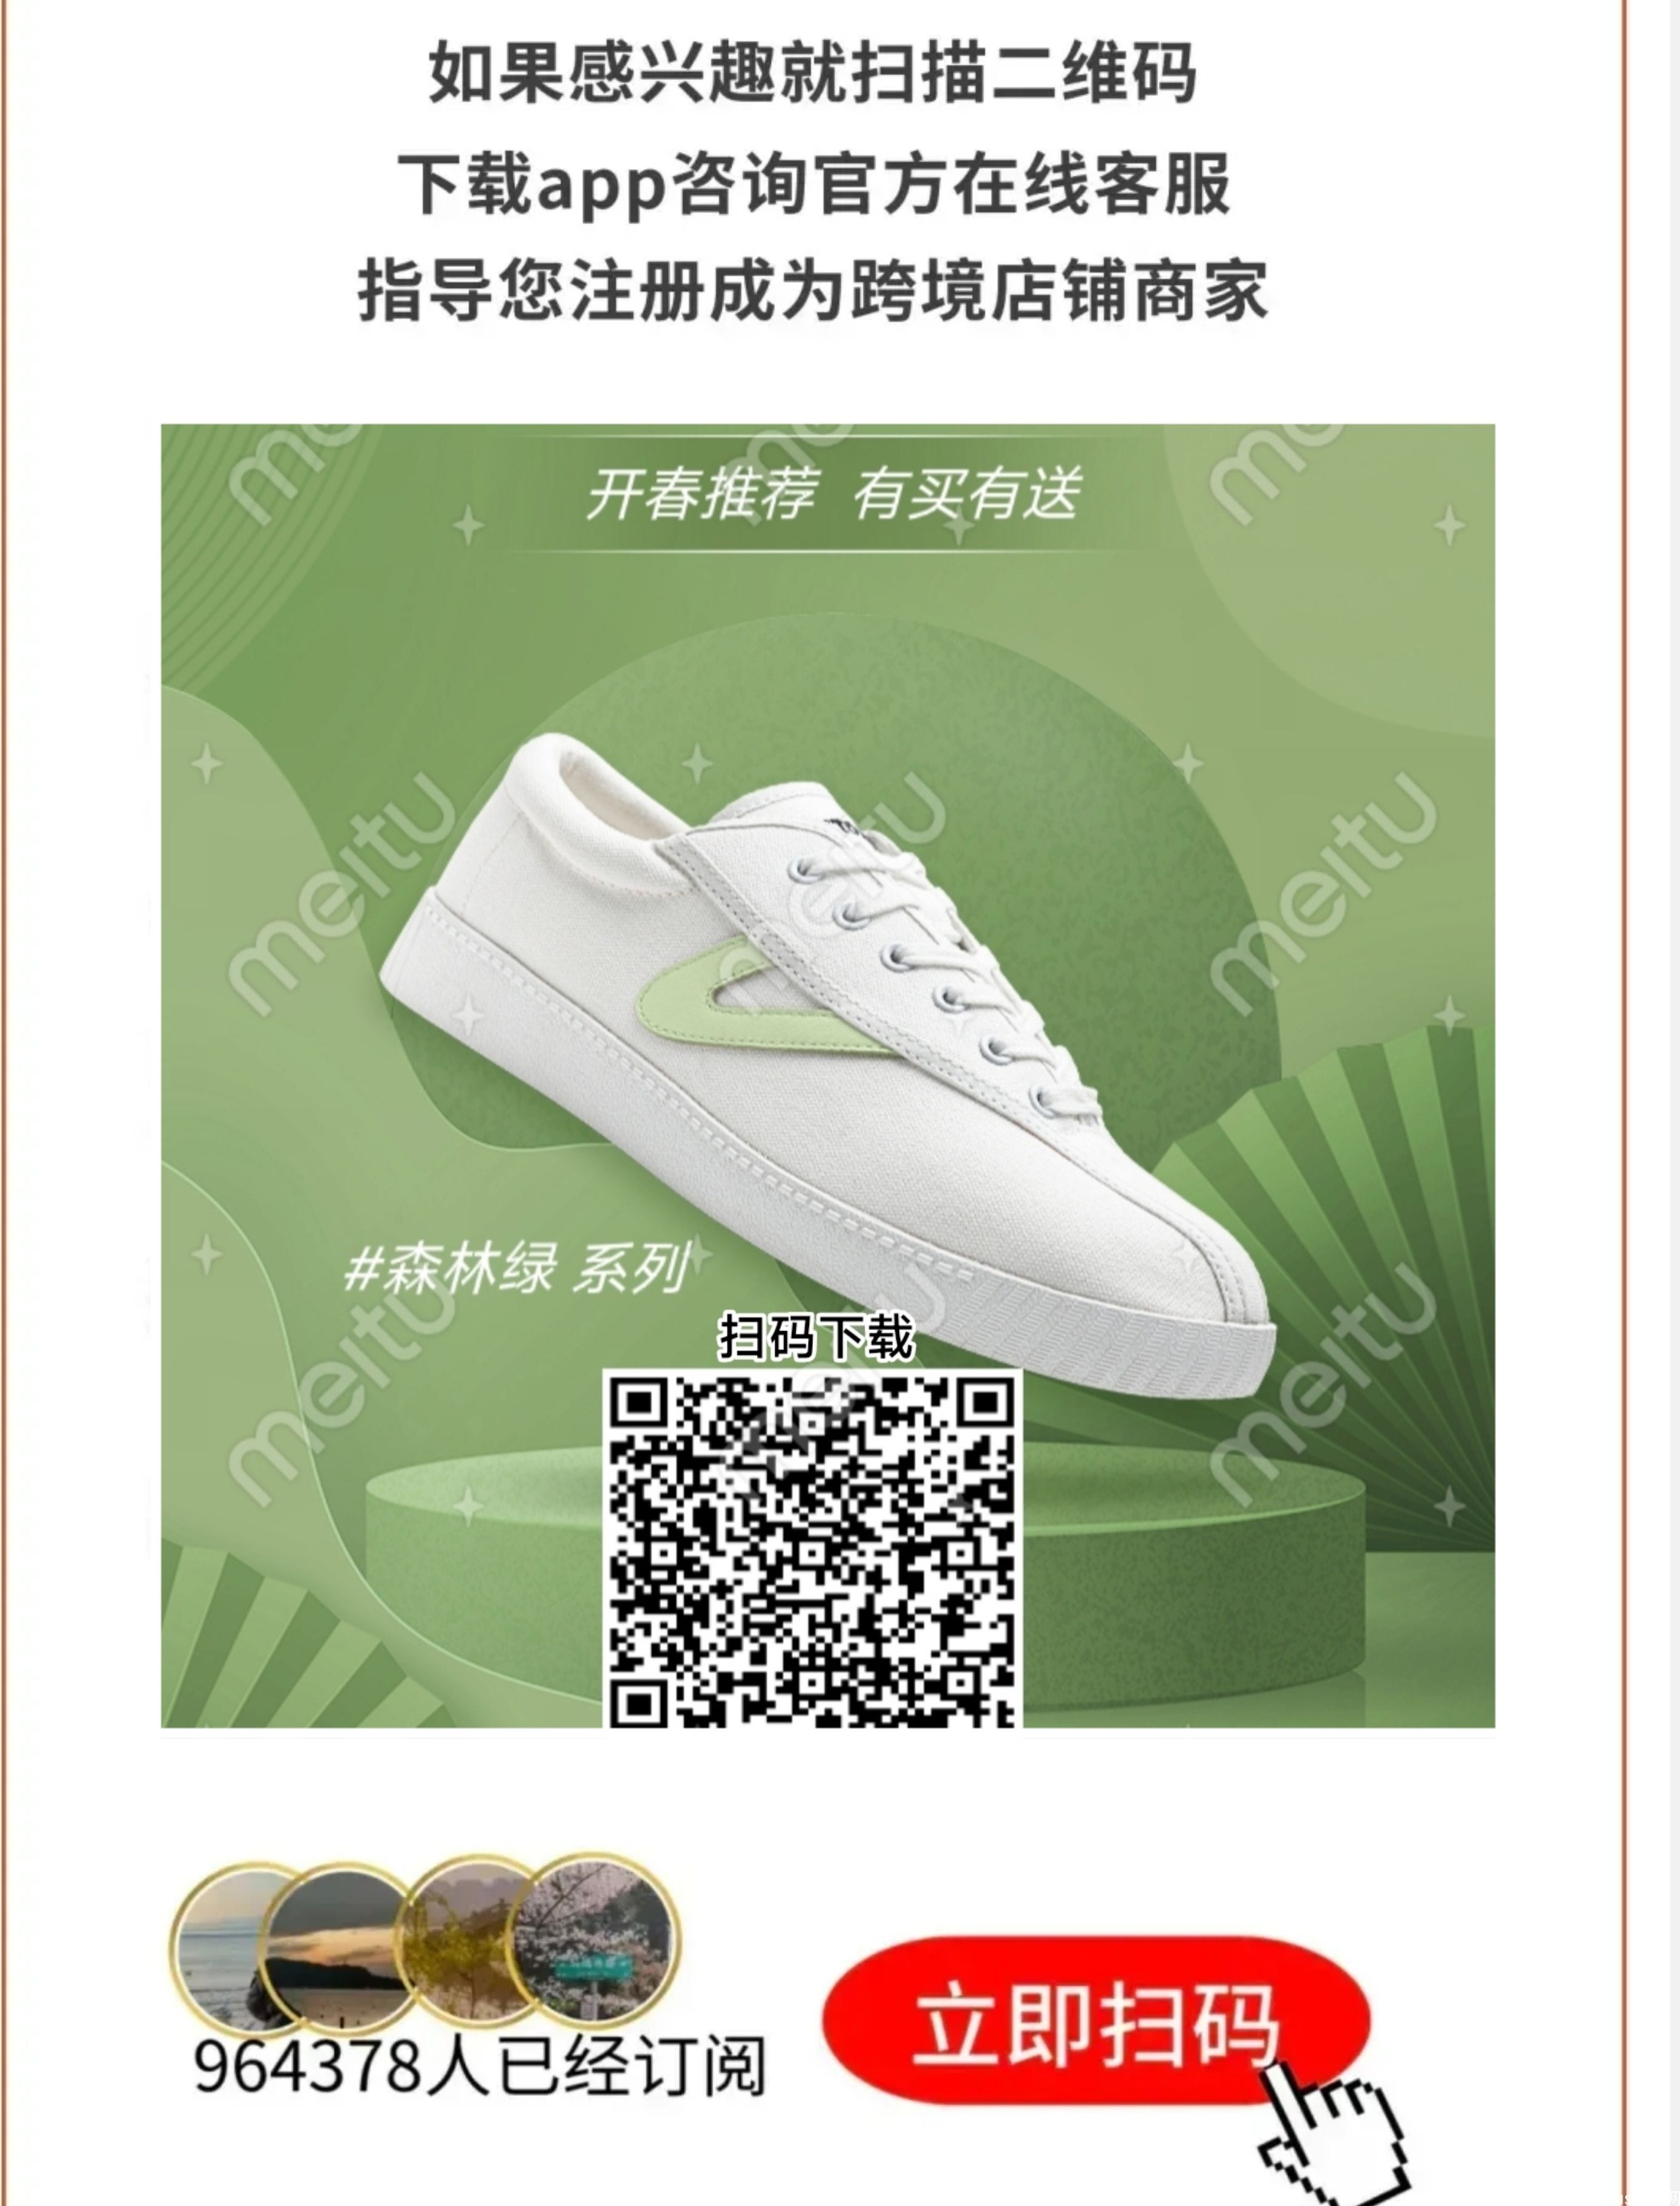 lingyi，最新无货源开店，注册就送20美金，免费上架产品_4